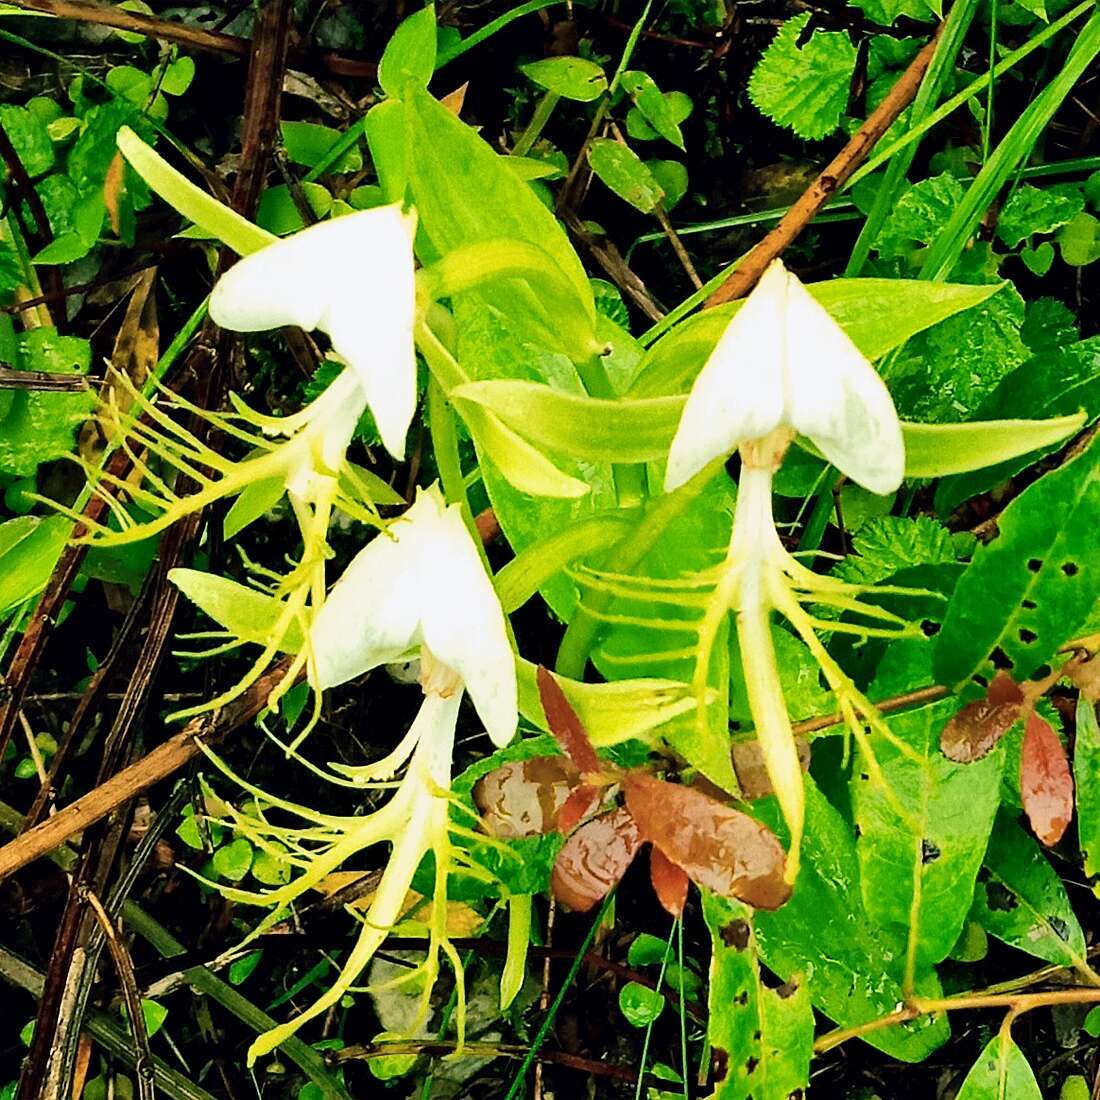 Image of Bog orchids